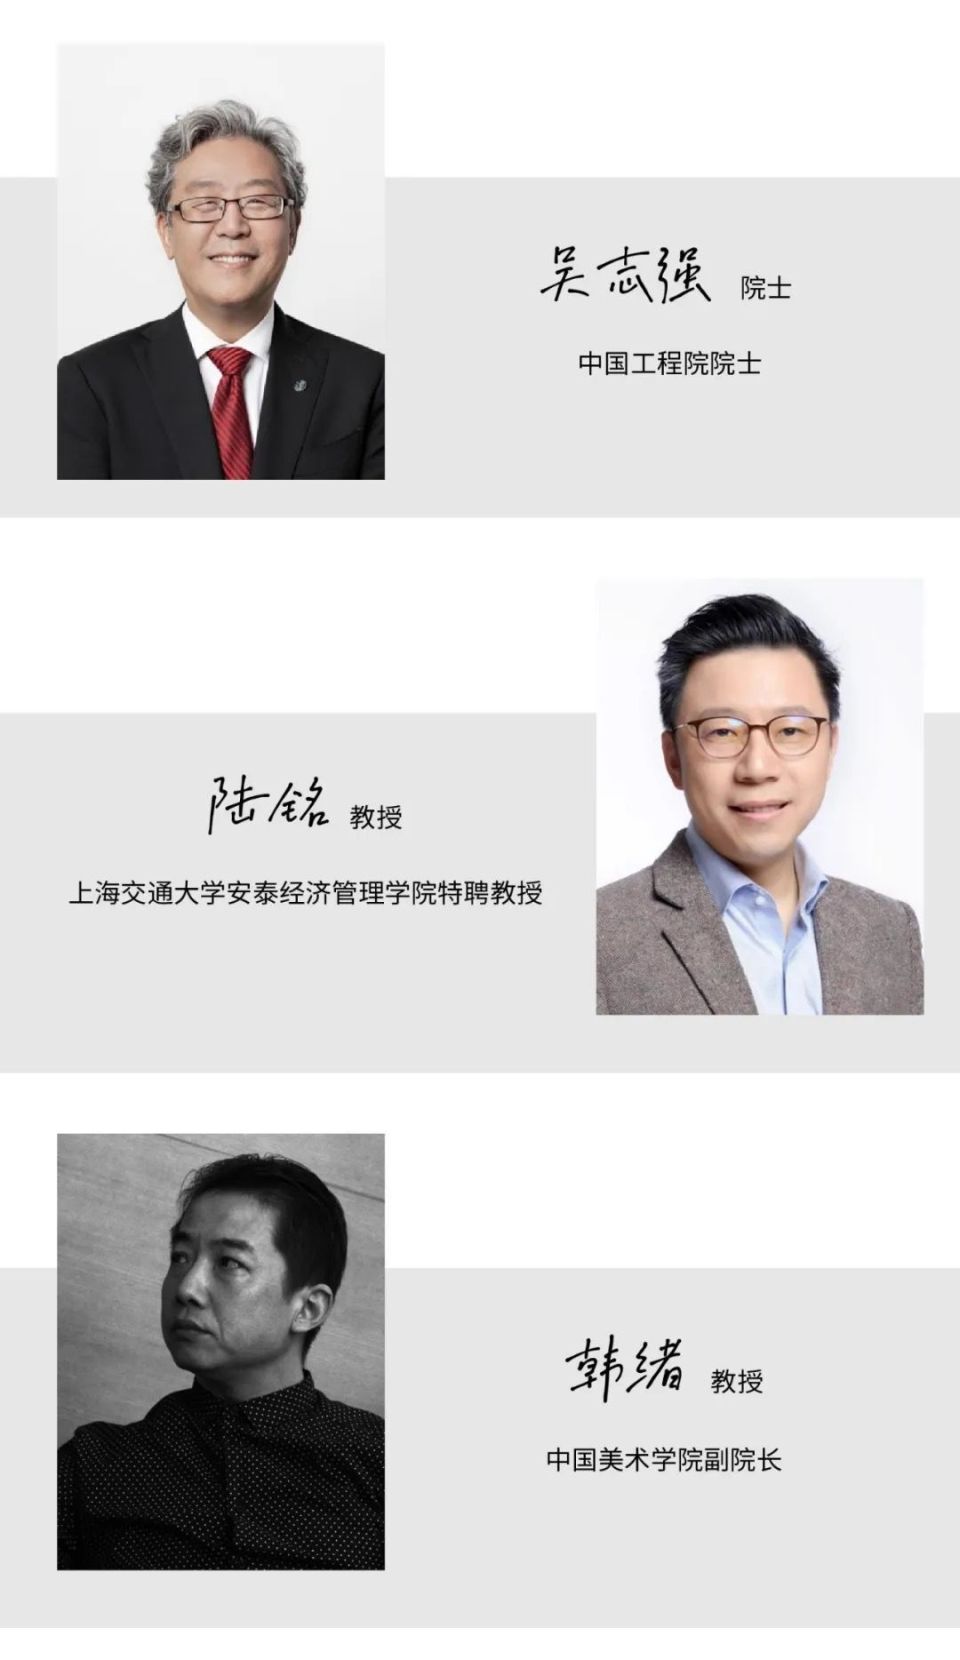 上海交通大学安泰经济管理学院特聘教授陆铭和中国美术学院副院长韩绪